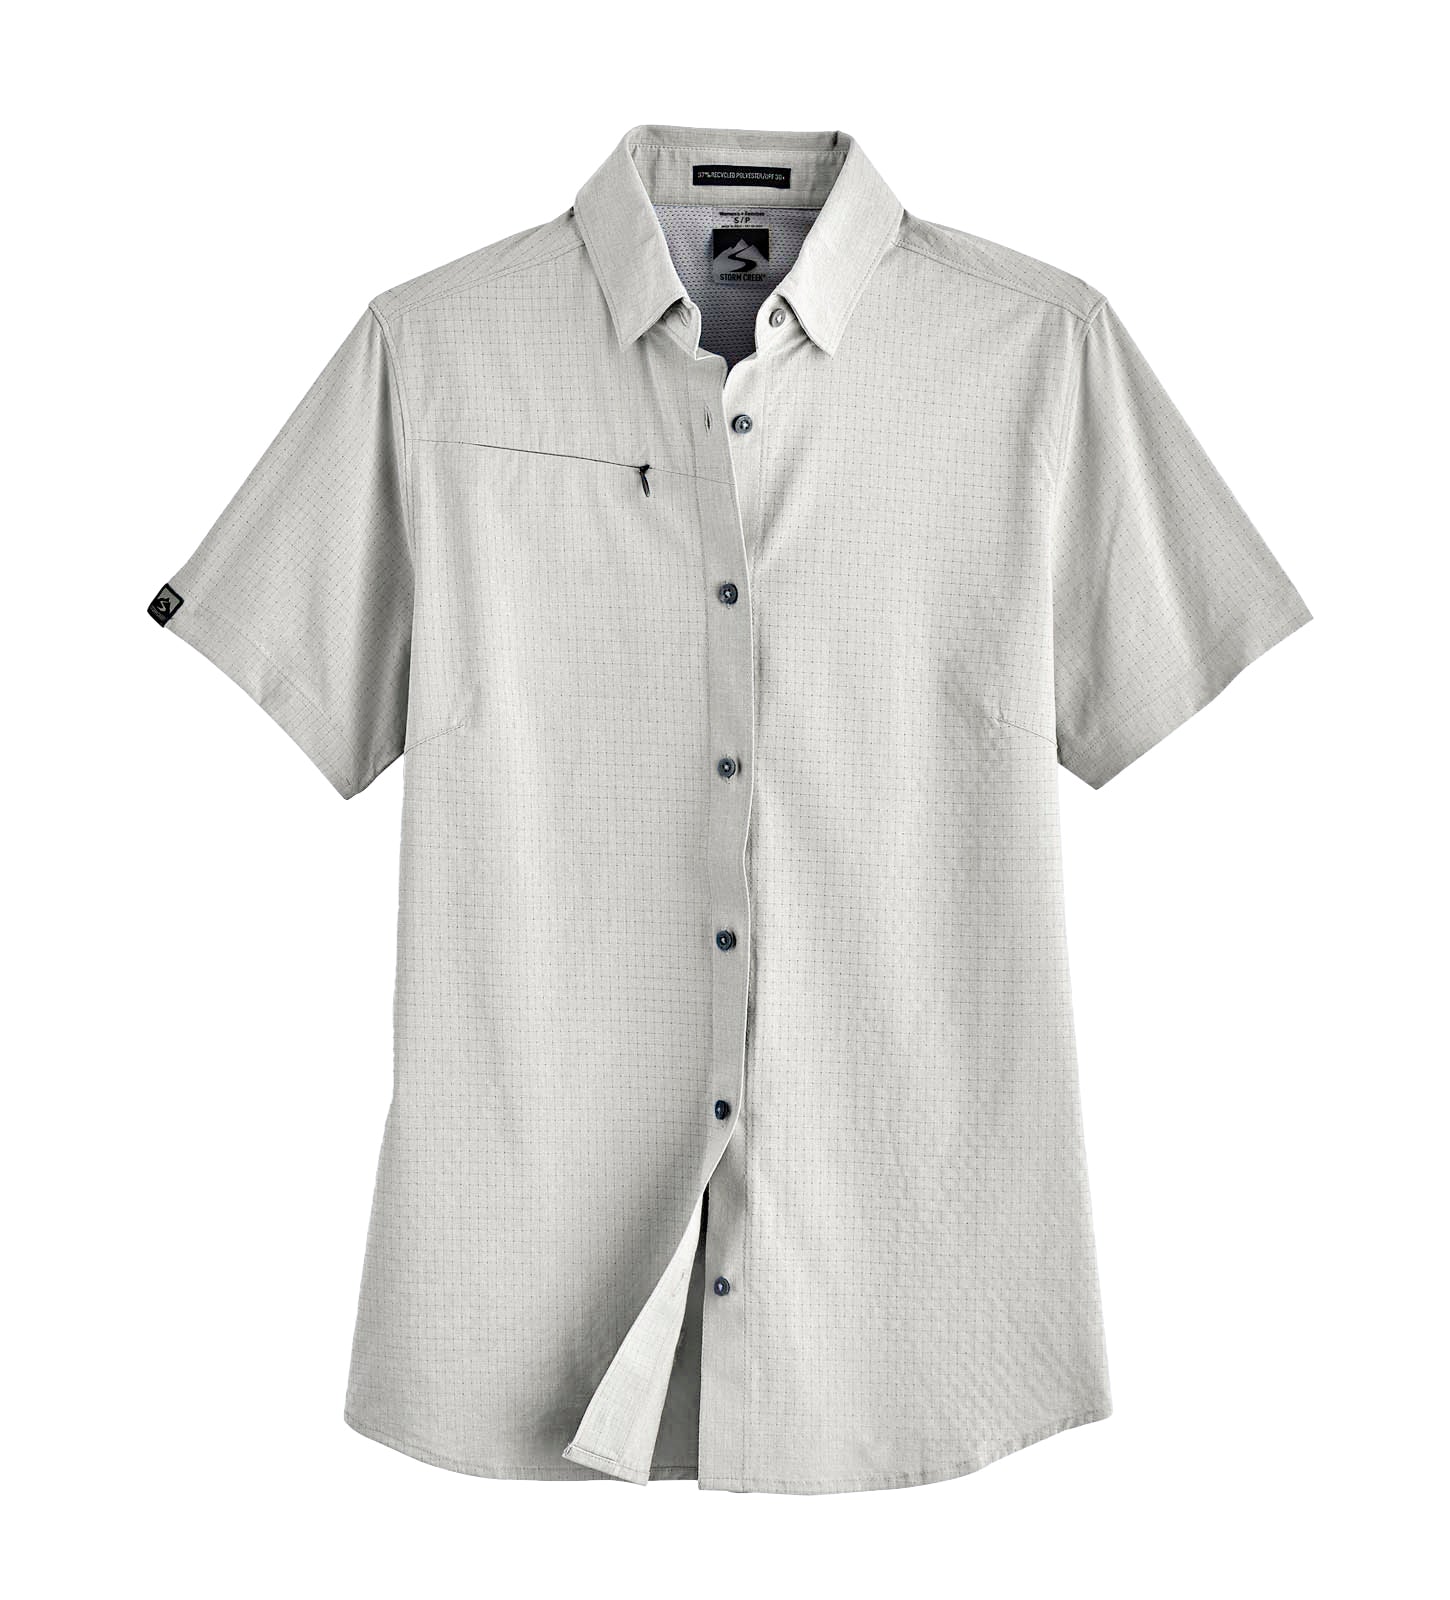 Storm Creek 2485 - Women's Naturalist Short Sleeve Woven Shirt